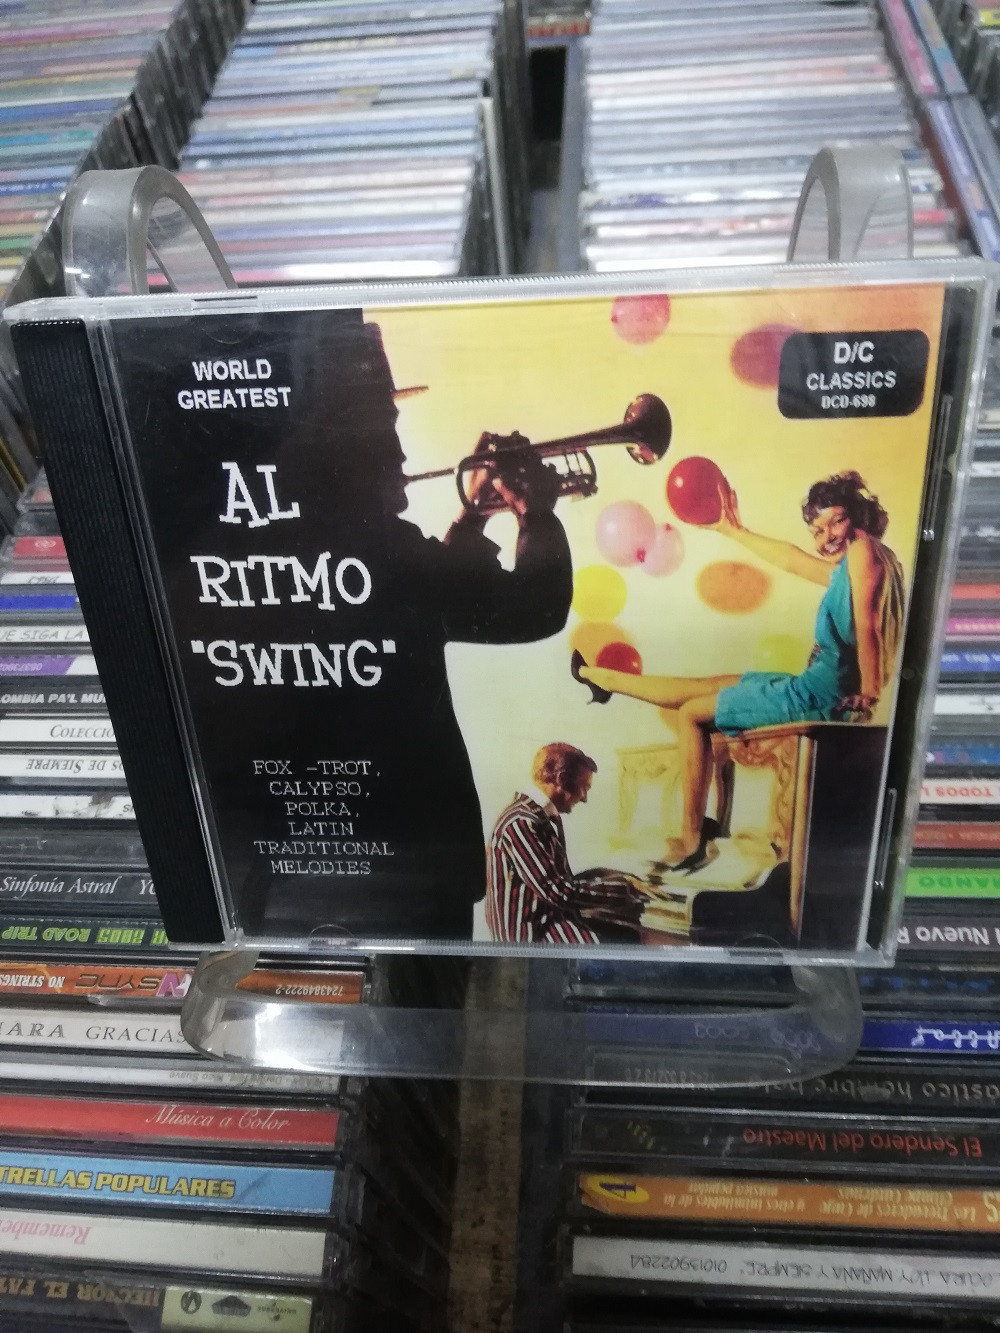 Imagen CD AL RITMO "SWING" 1